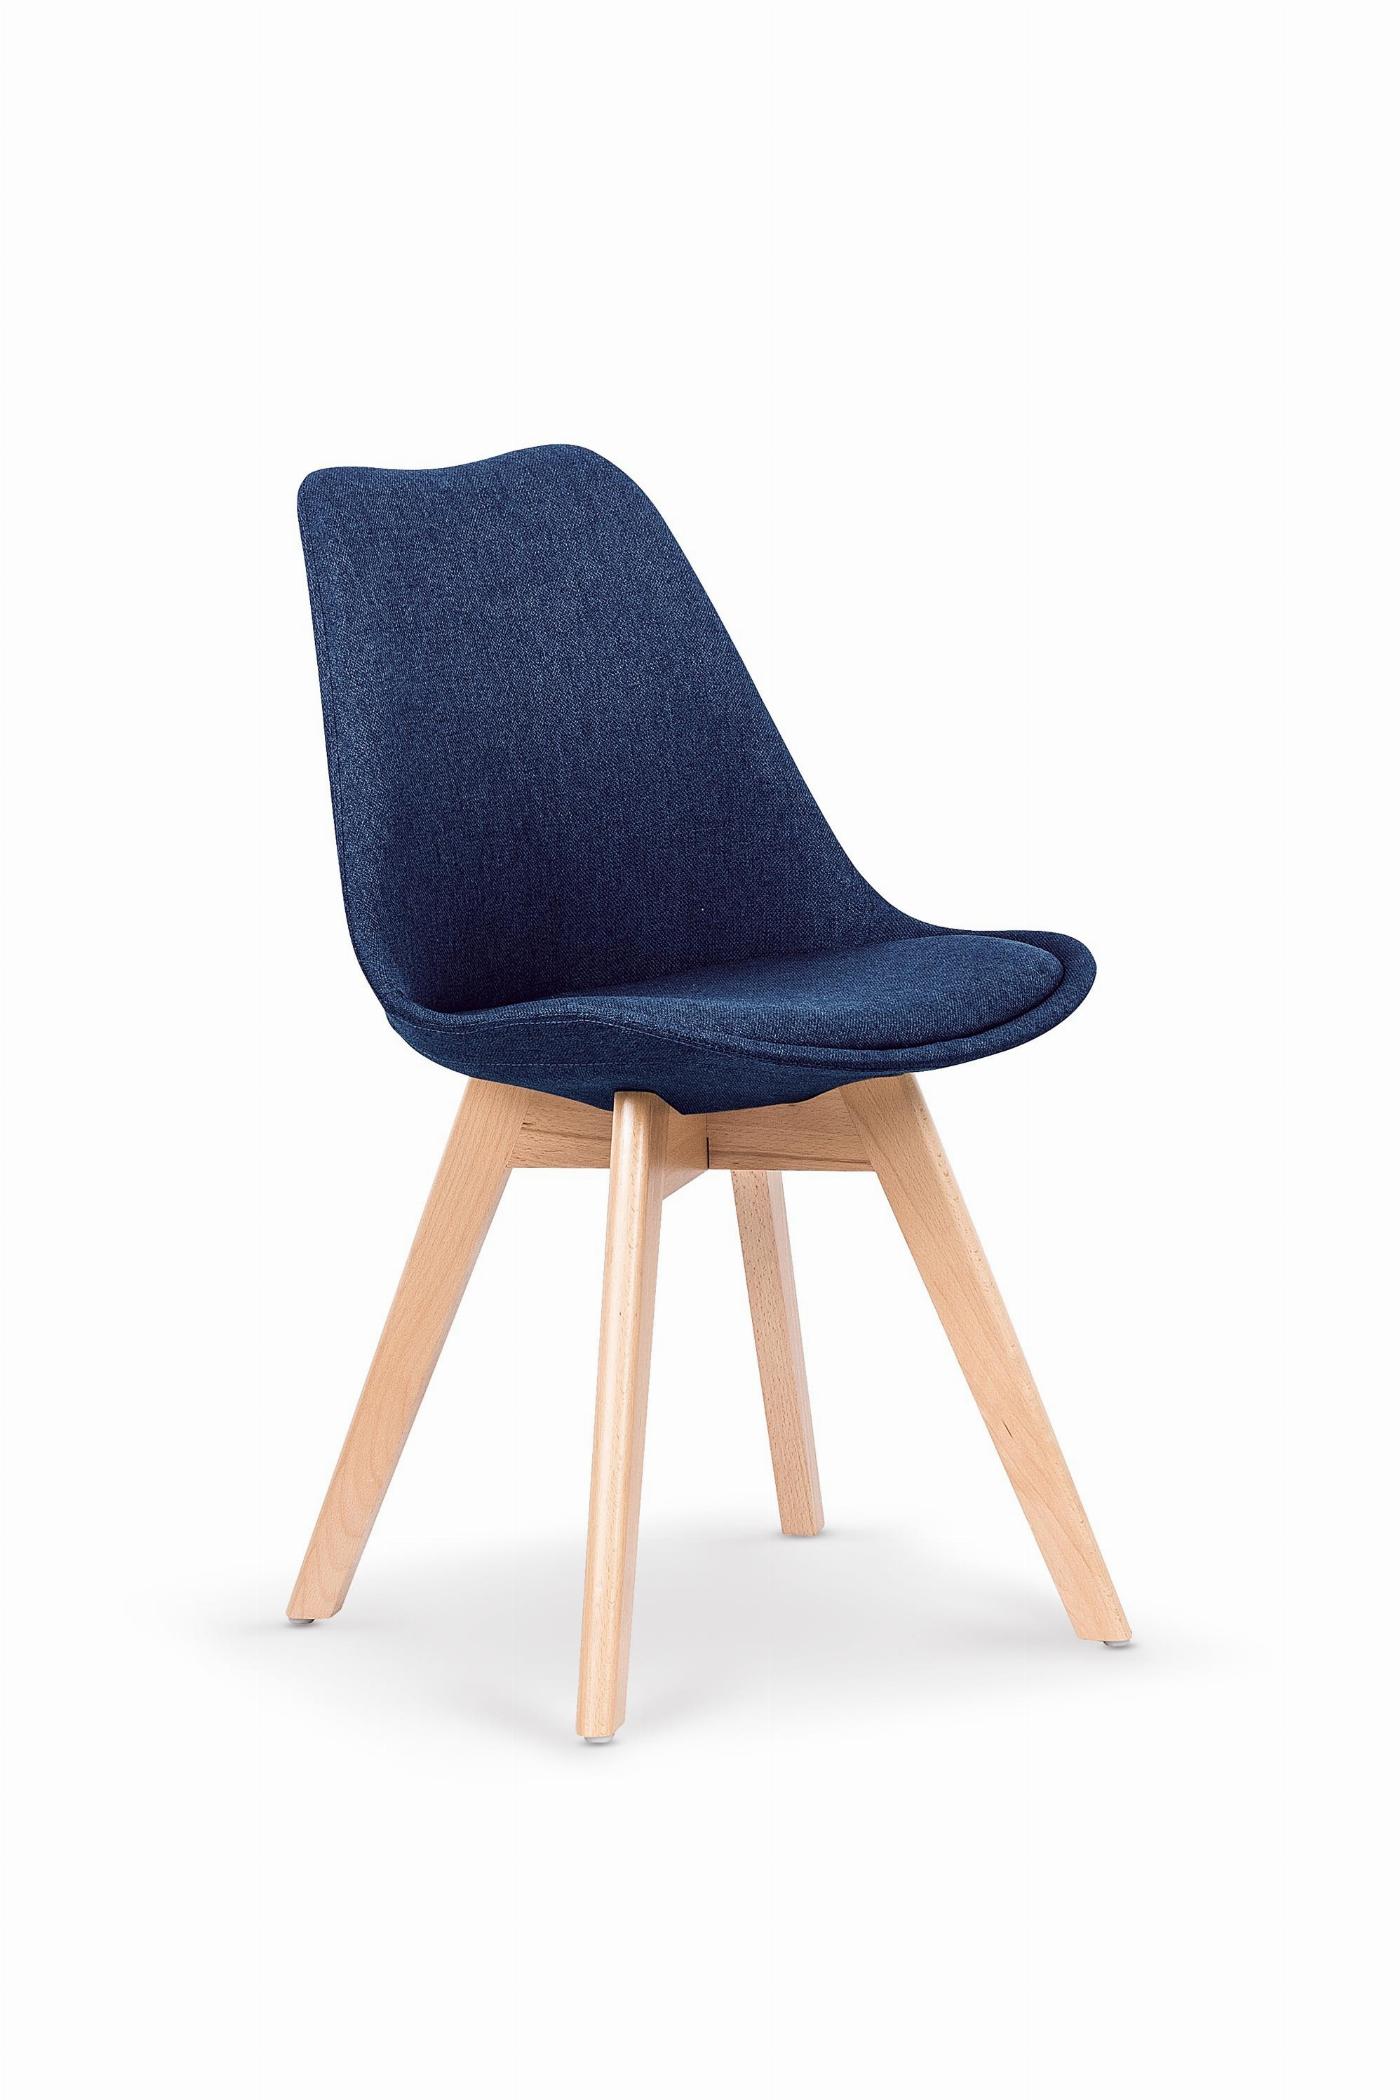 K303 krzesło ciemny niebieski / buk